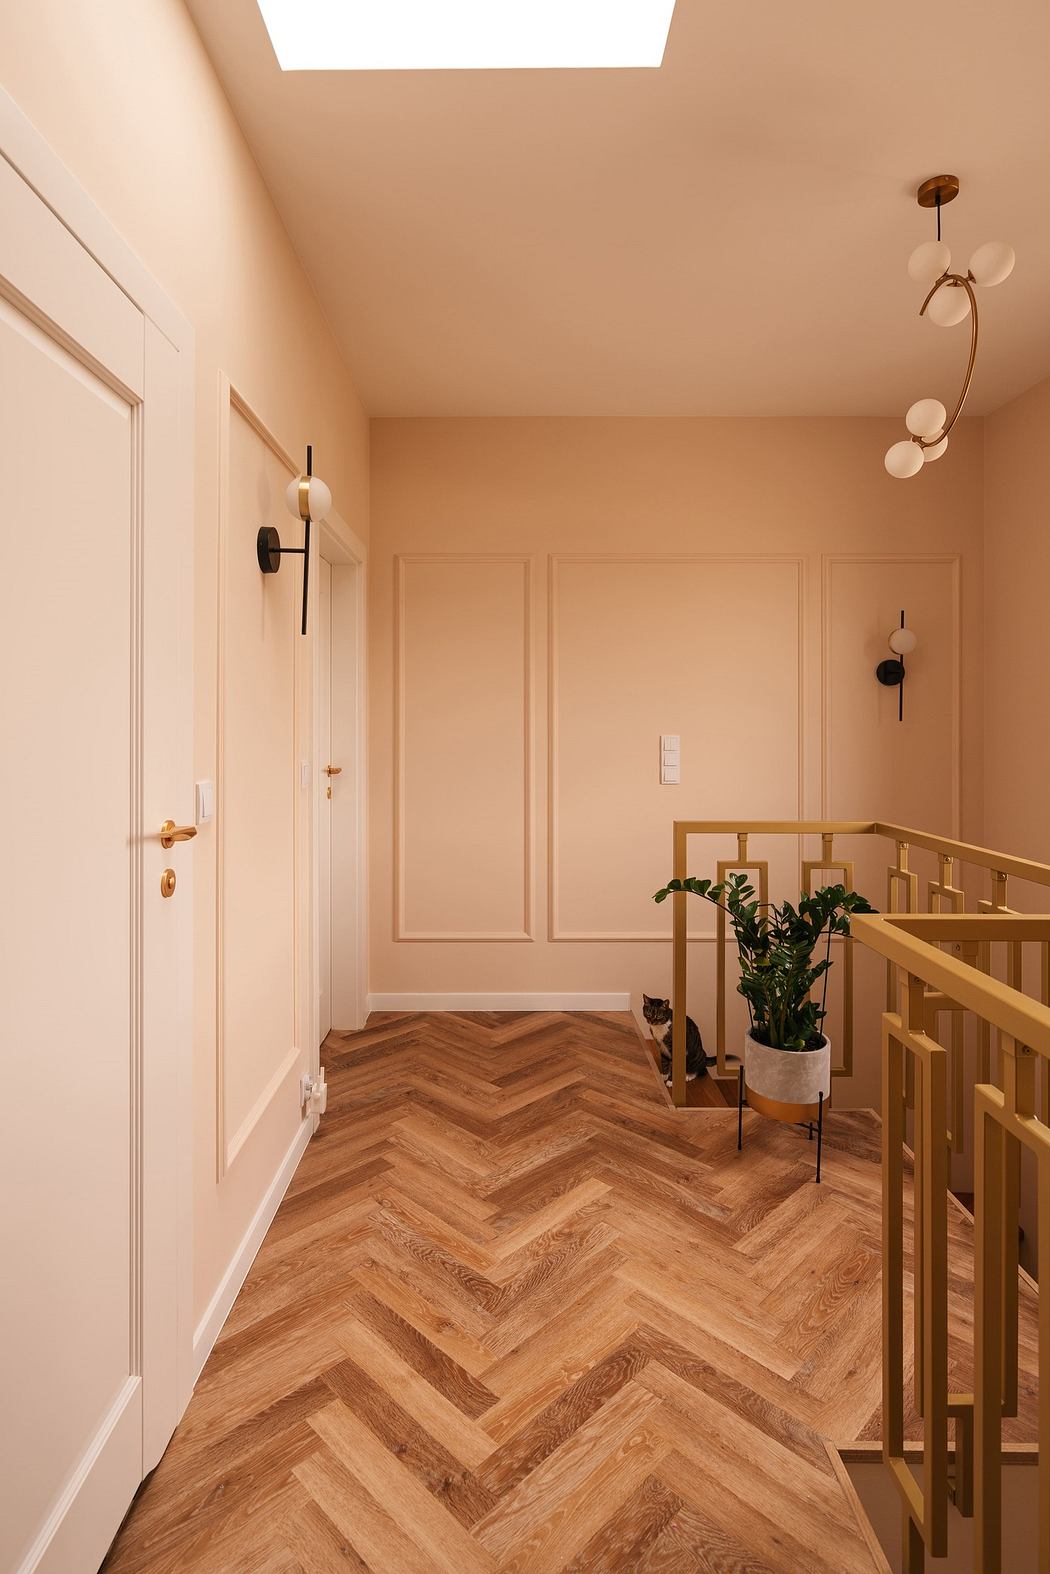 Elegant hallway with herringbone wood floor and pastel walls.